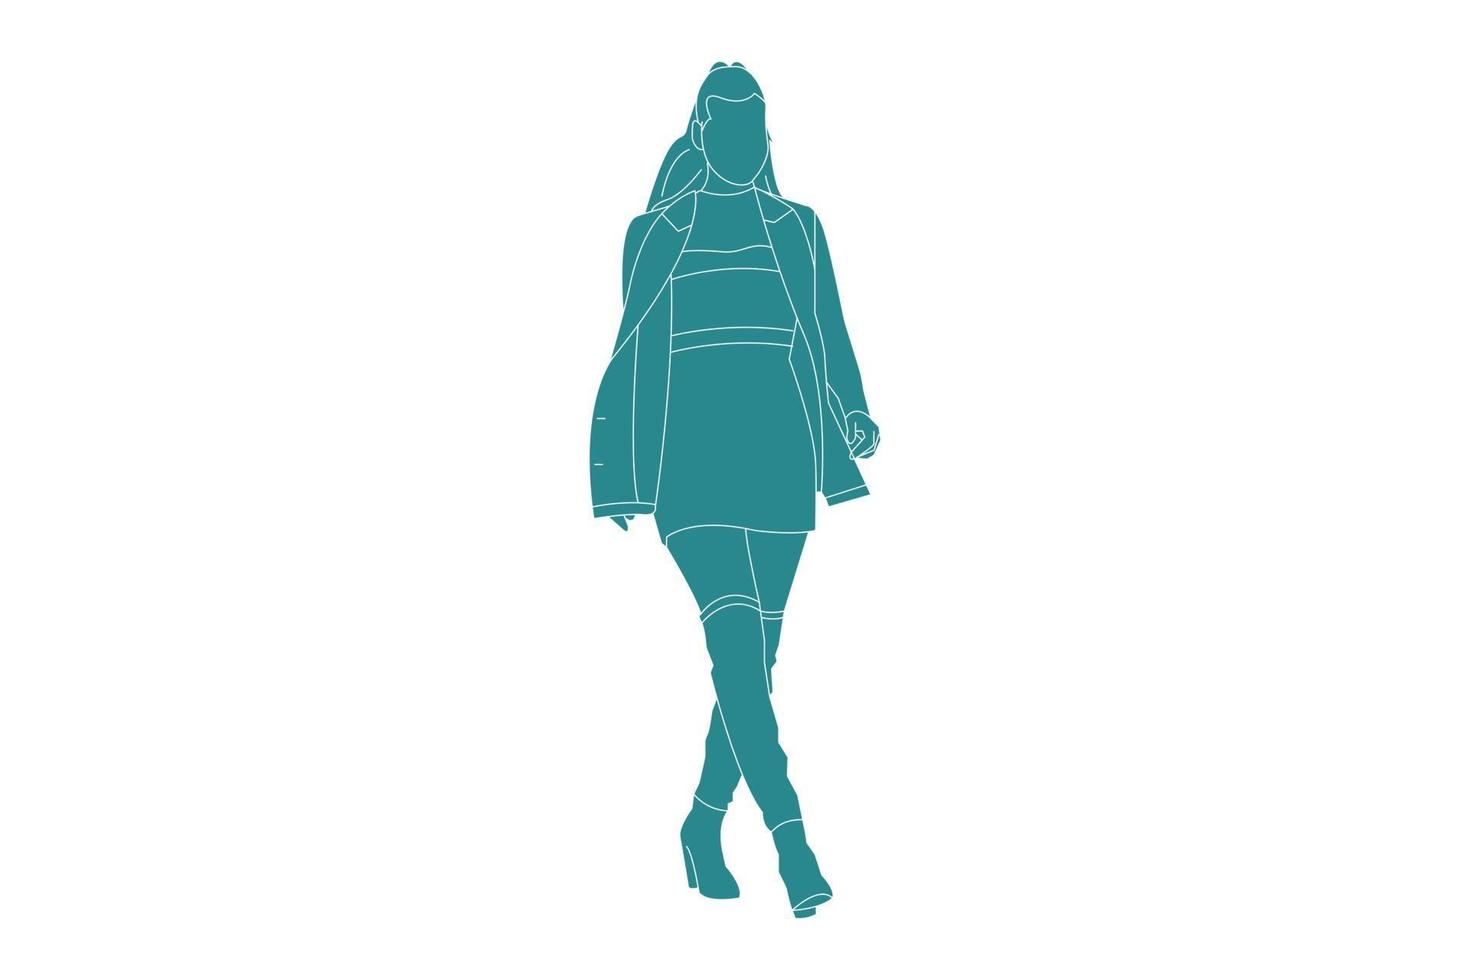 mujer de ilustración vectorial posando en la acera, estilo plano con contorno vector